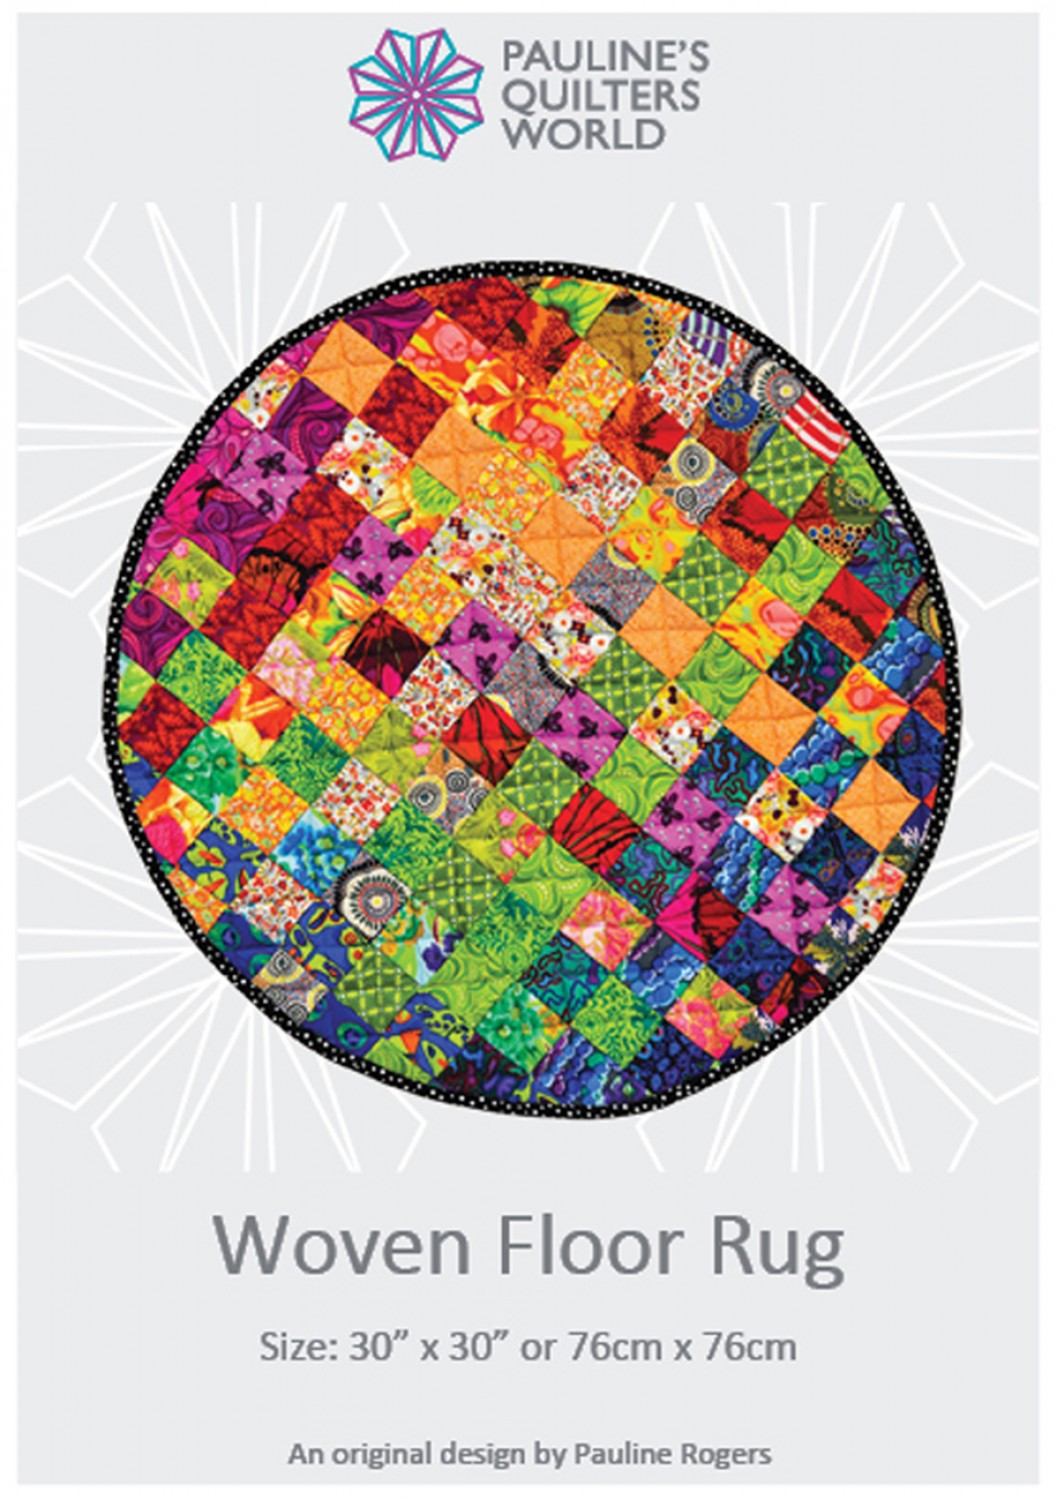 Woven Floor Rug Pattern